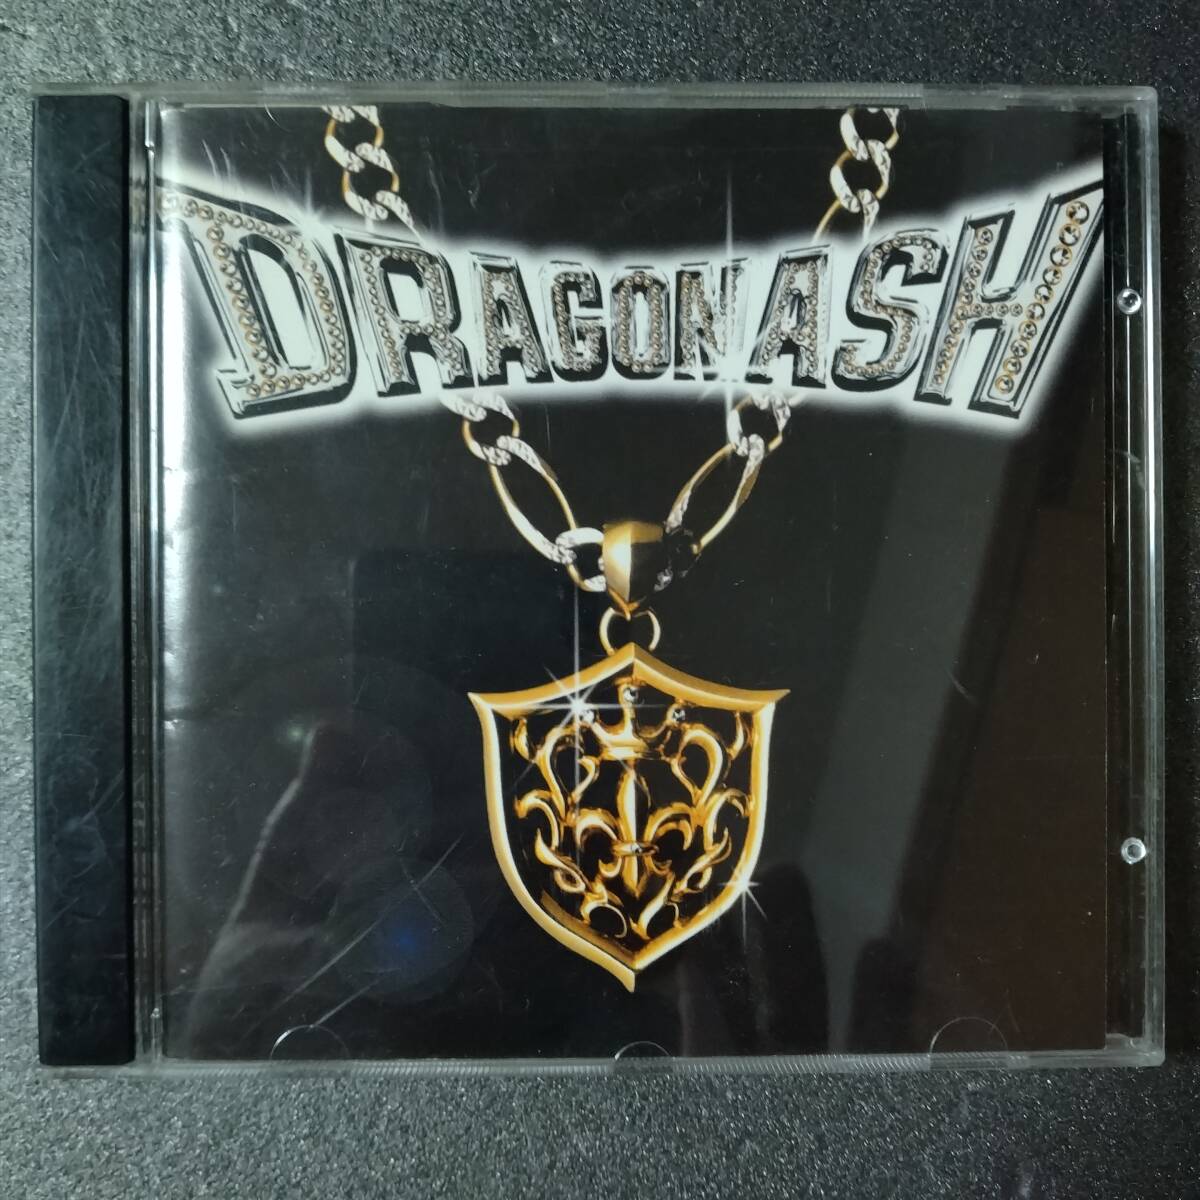 ◎◎ Dragon Ash「LILY OF DA VALLEY」 同梱可 CD アルバム 初回盤の画像1